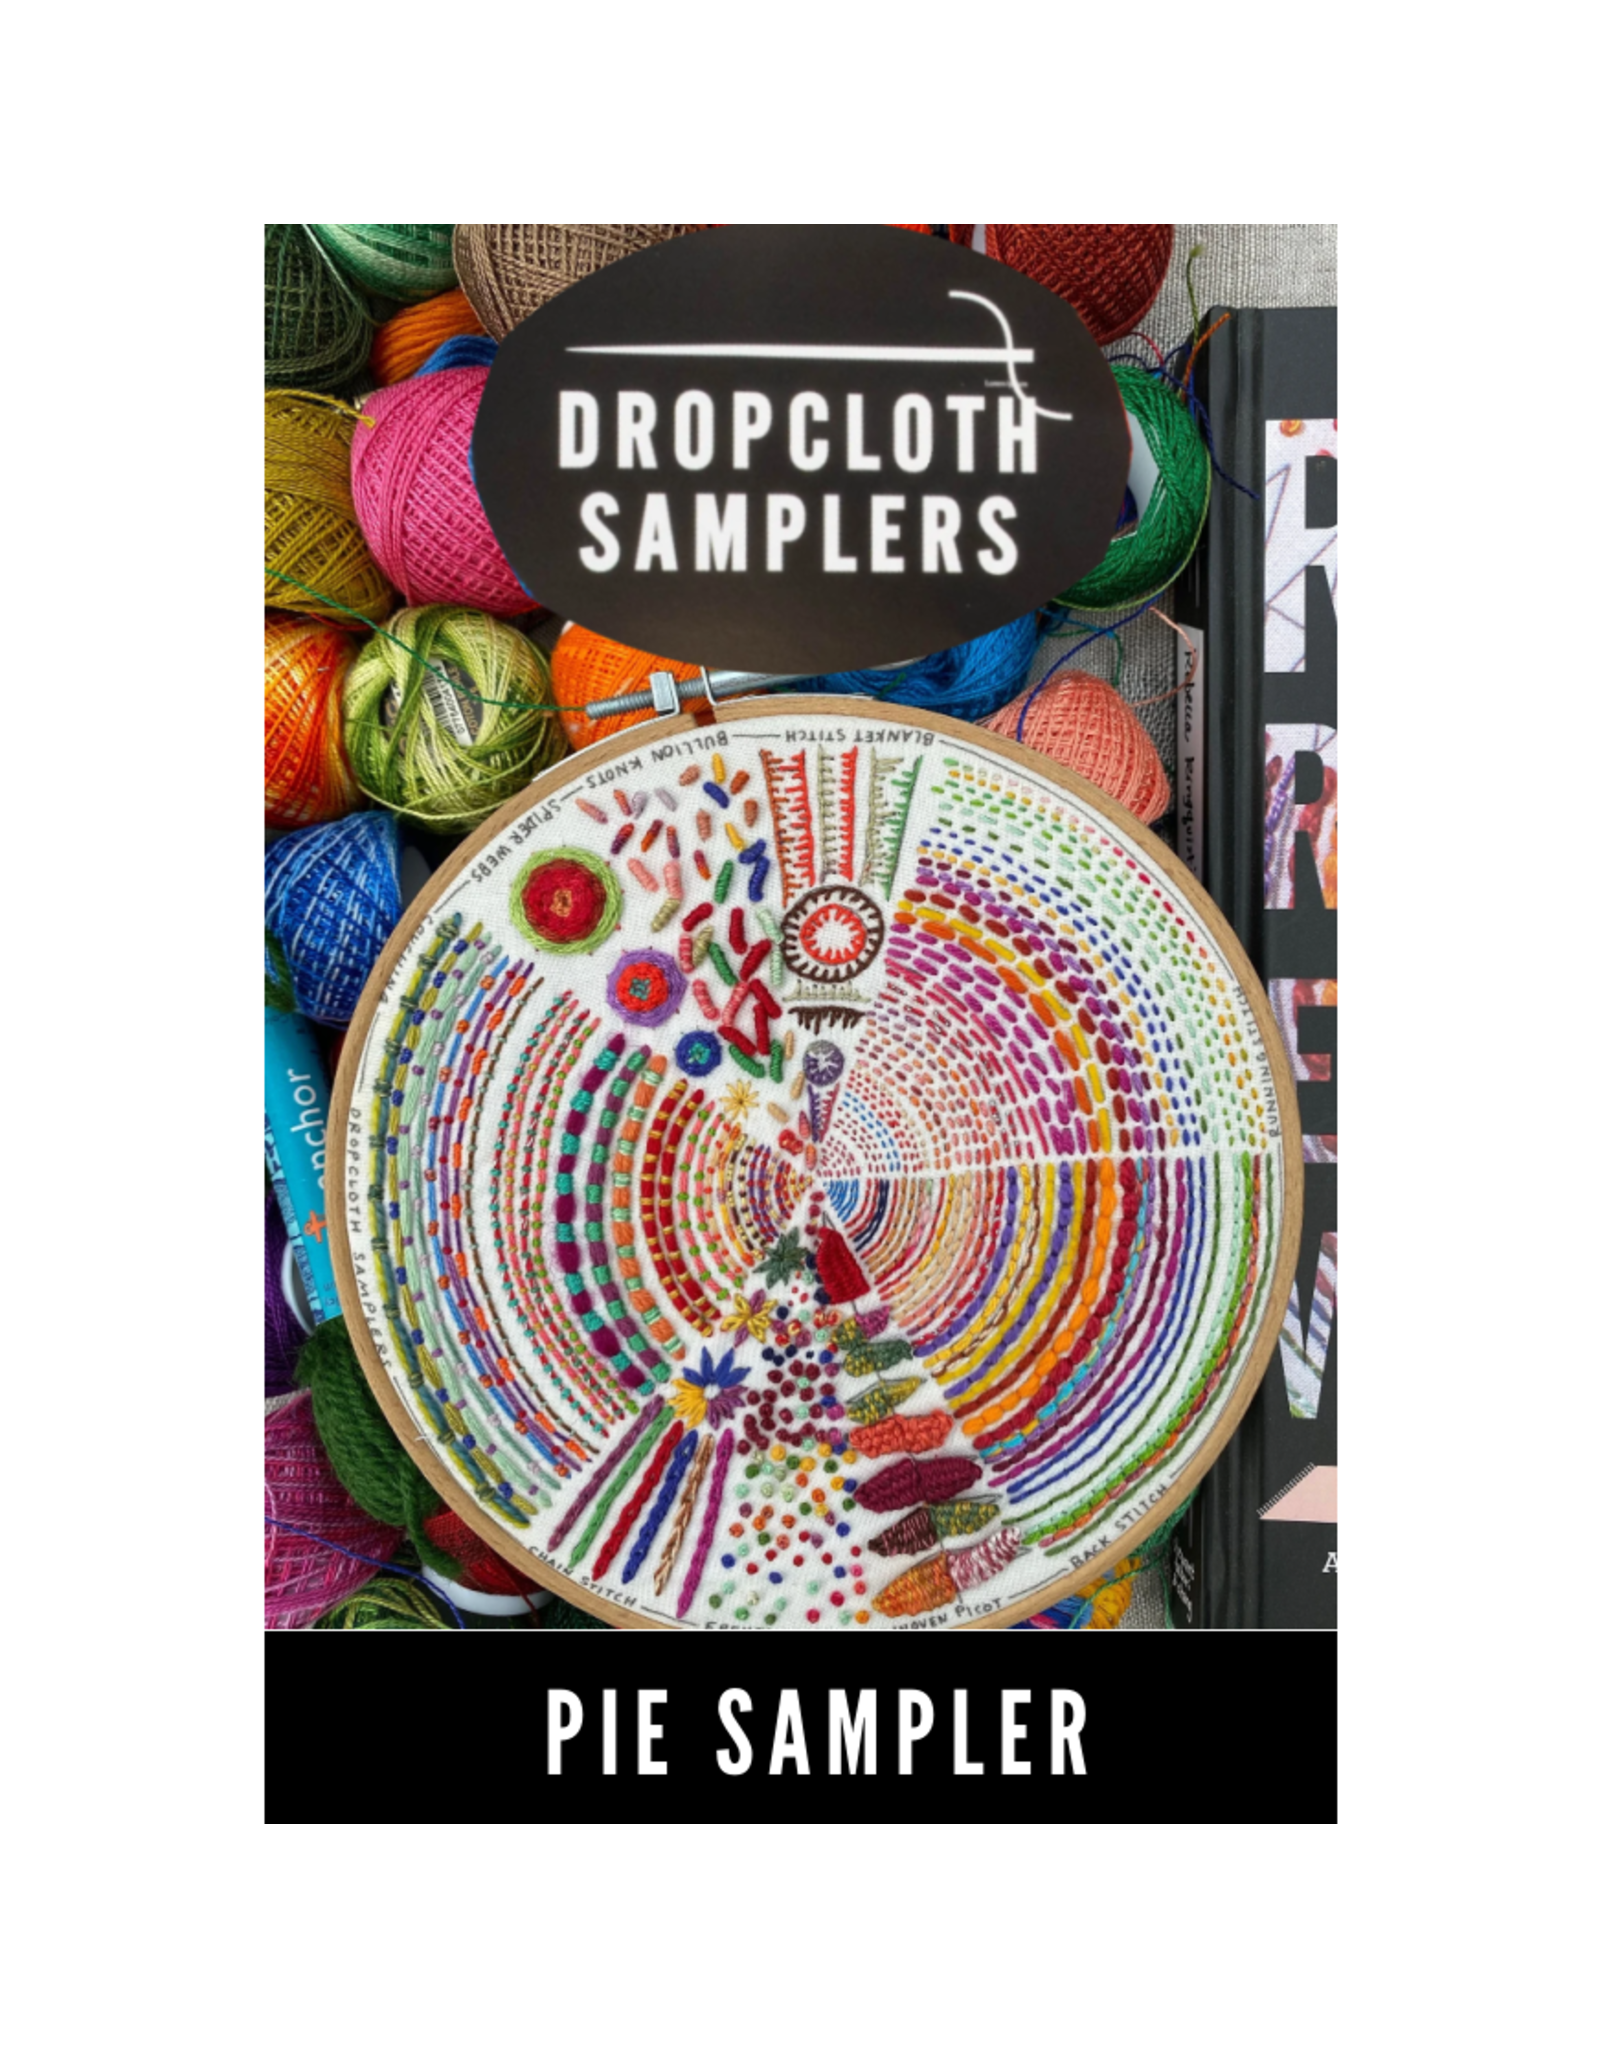 Dropcloth Samplers Pie Sampler from Dropcloth Samplers